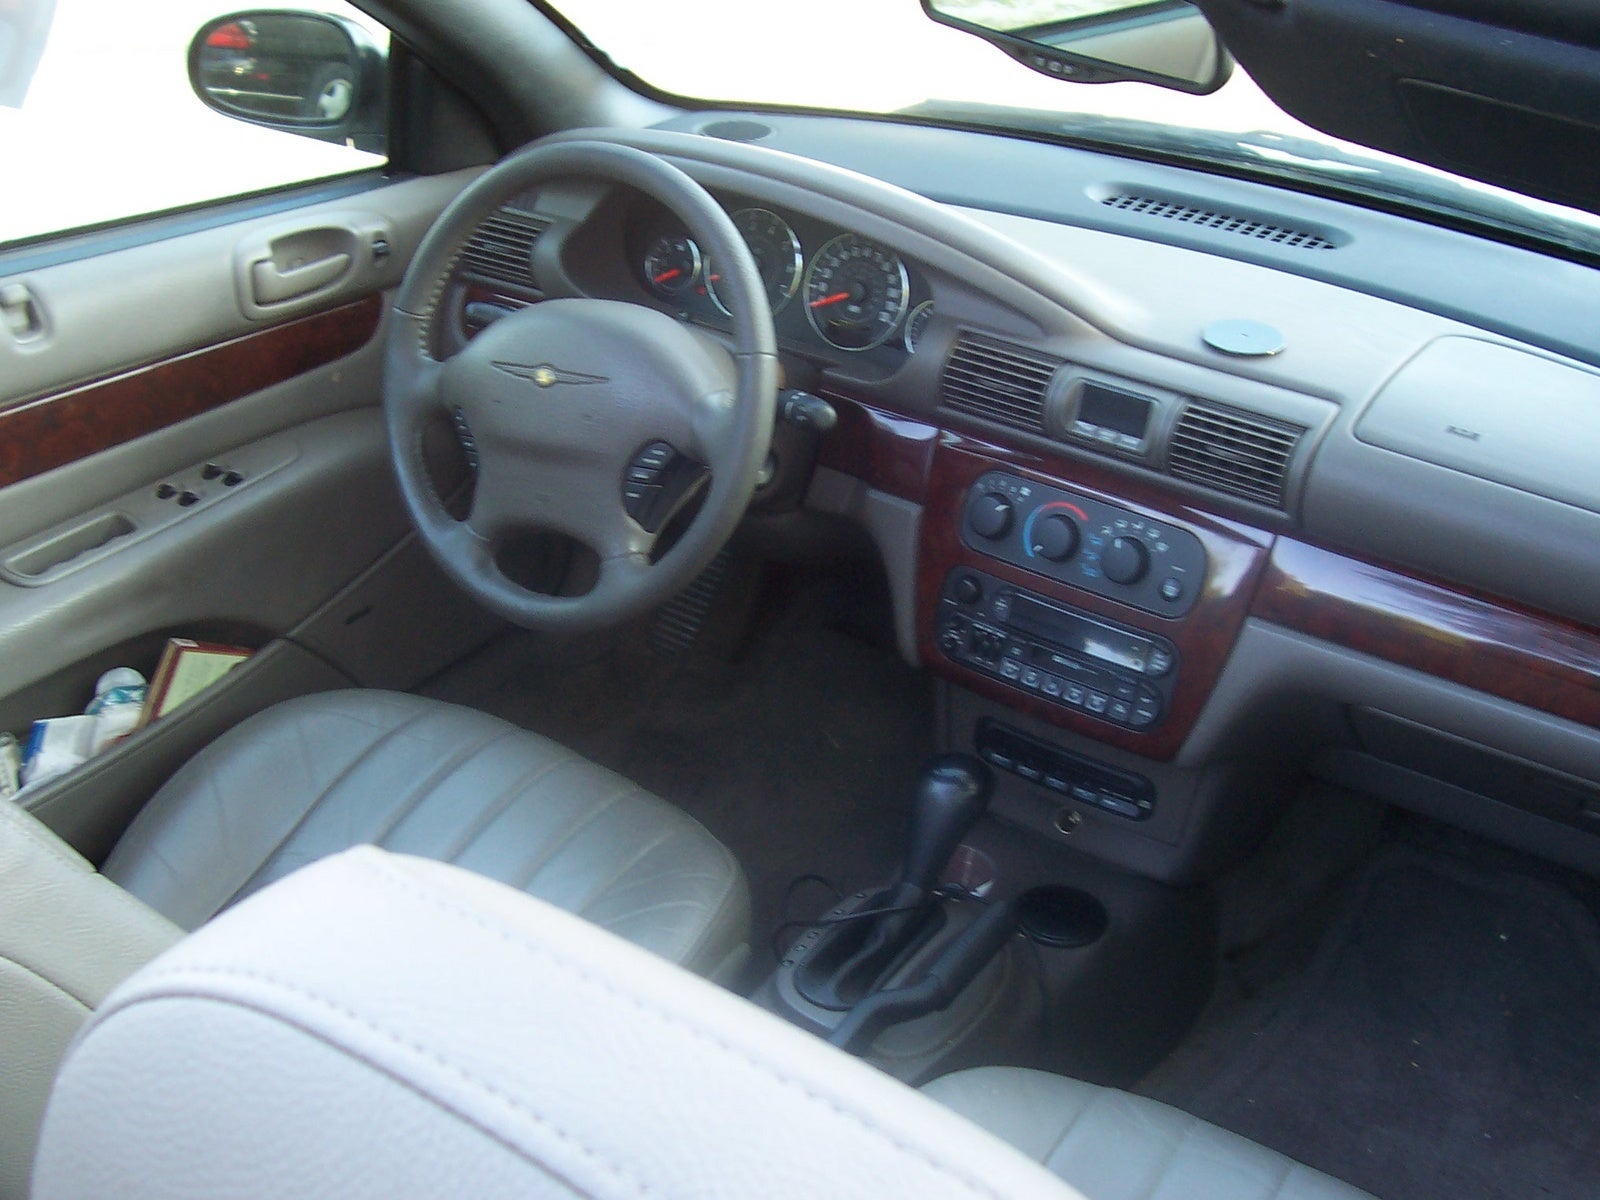 2006 Chrysler sebring tire size